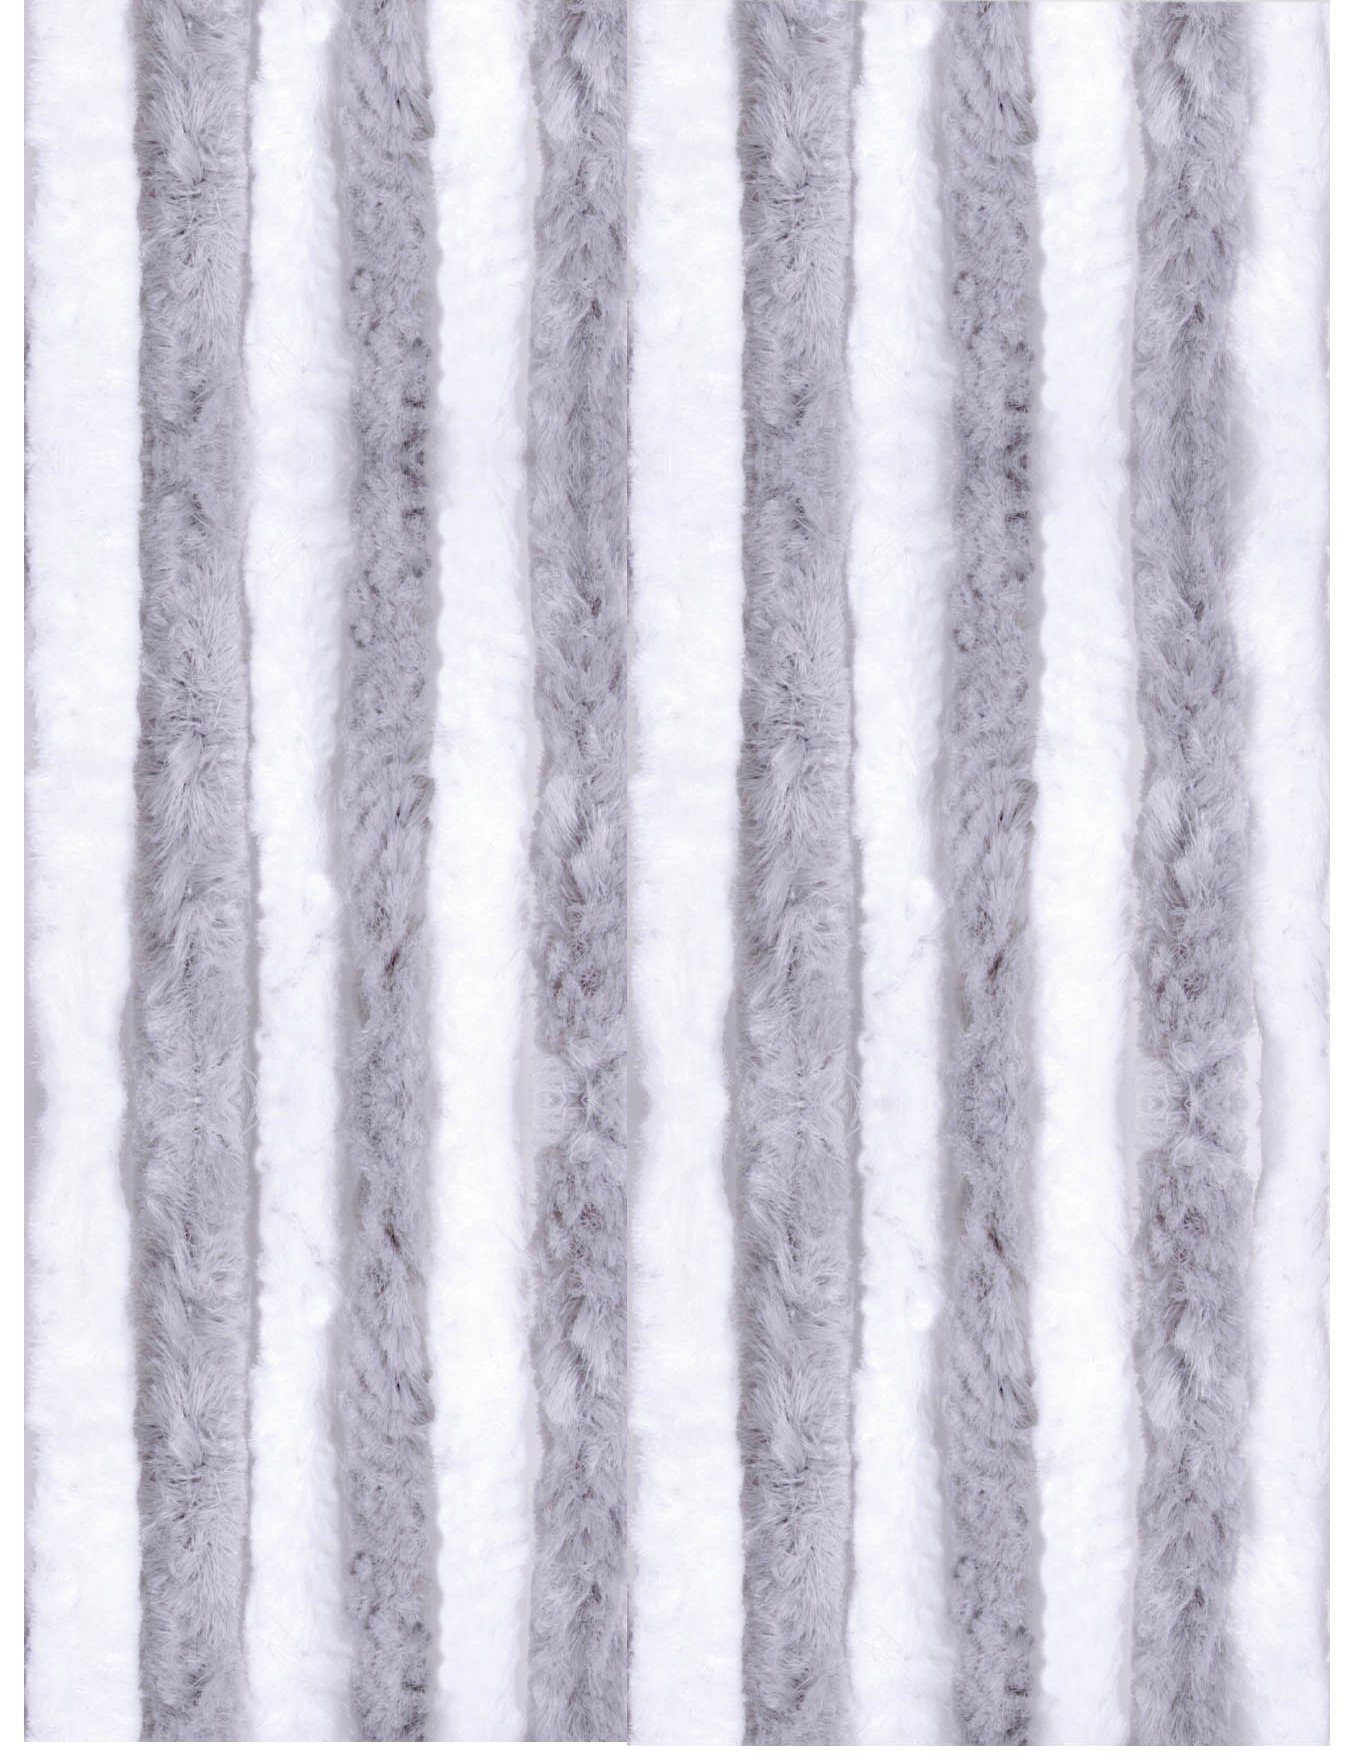 Türvorhang Flauschi, Arsvita, Ösen (1 St), Flauschvorhang 160x185 cm in Unistreifen hellgrau - weiß, viele Farben